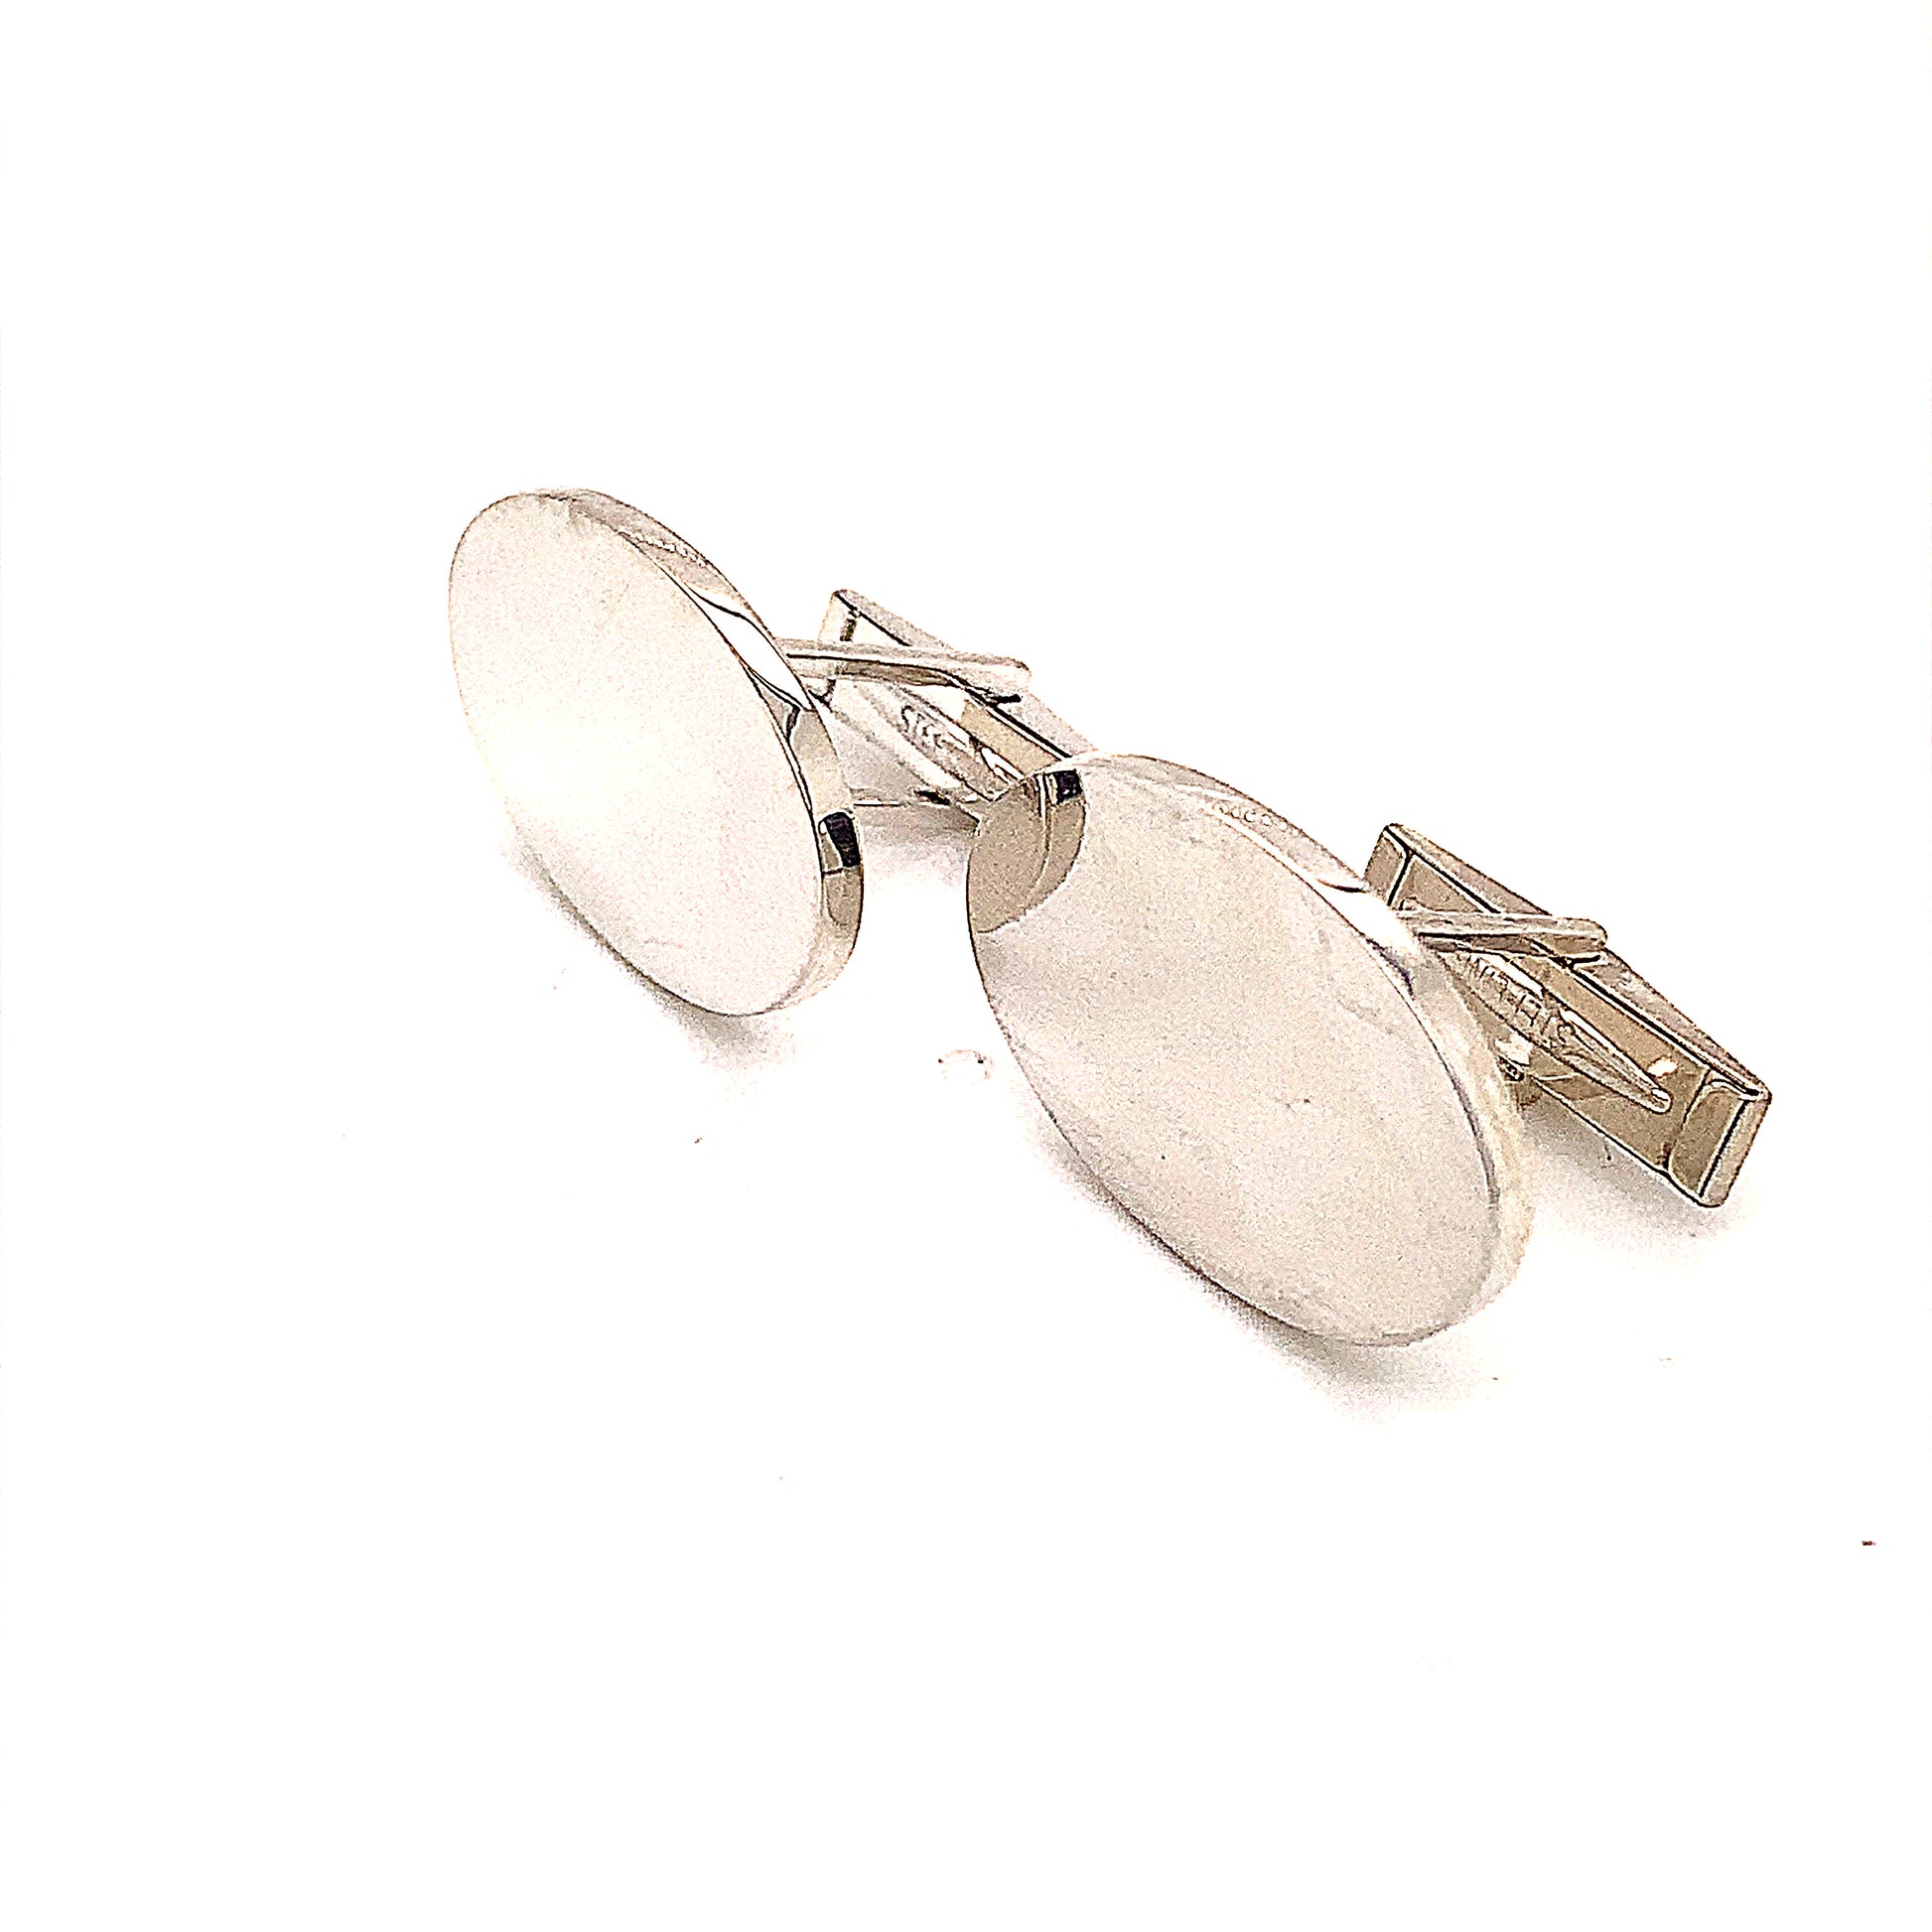 Tiffany & Co Estate Sterling Silver Wide Oval Cufflinks 19 Grams TIF142 - Certified Estate Jewelry